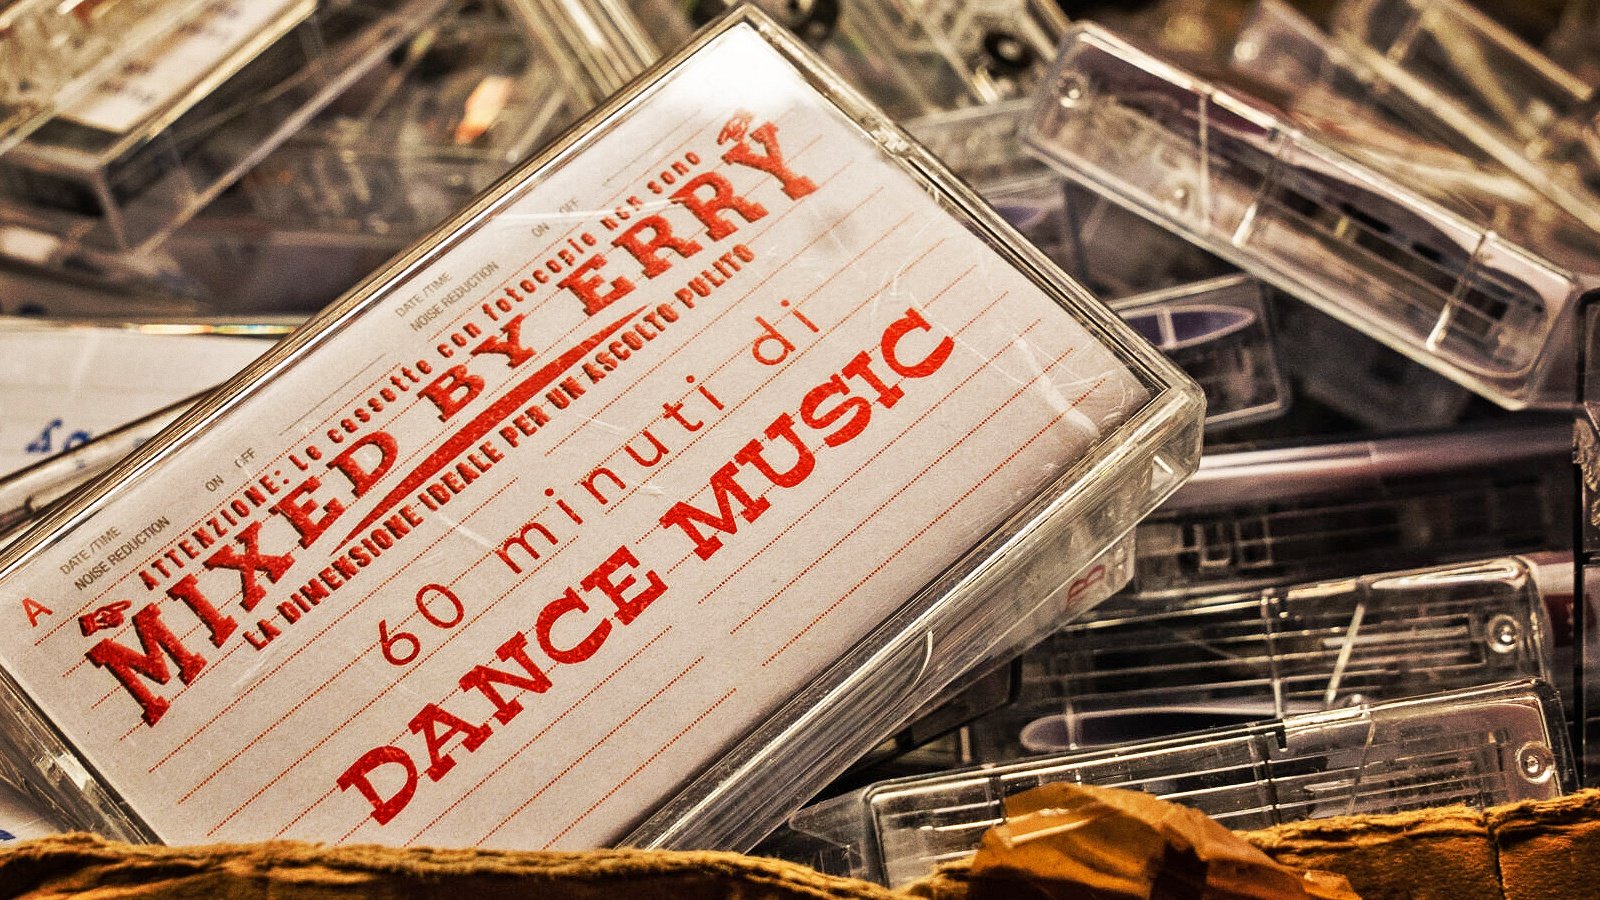 Mixed by Erry: non solo Erry, ecco cosa è stata la pirateria discografica